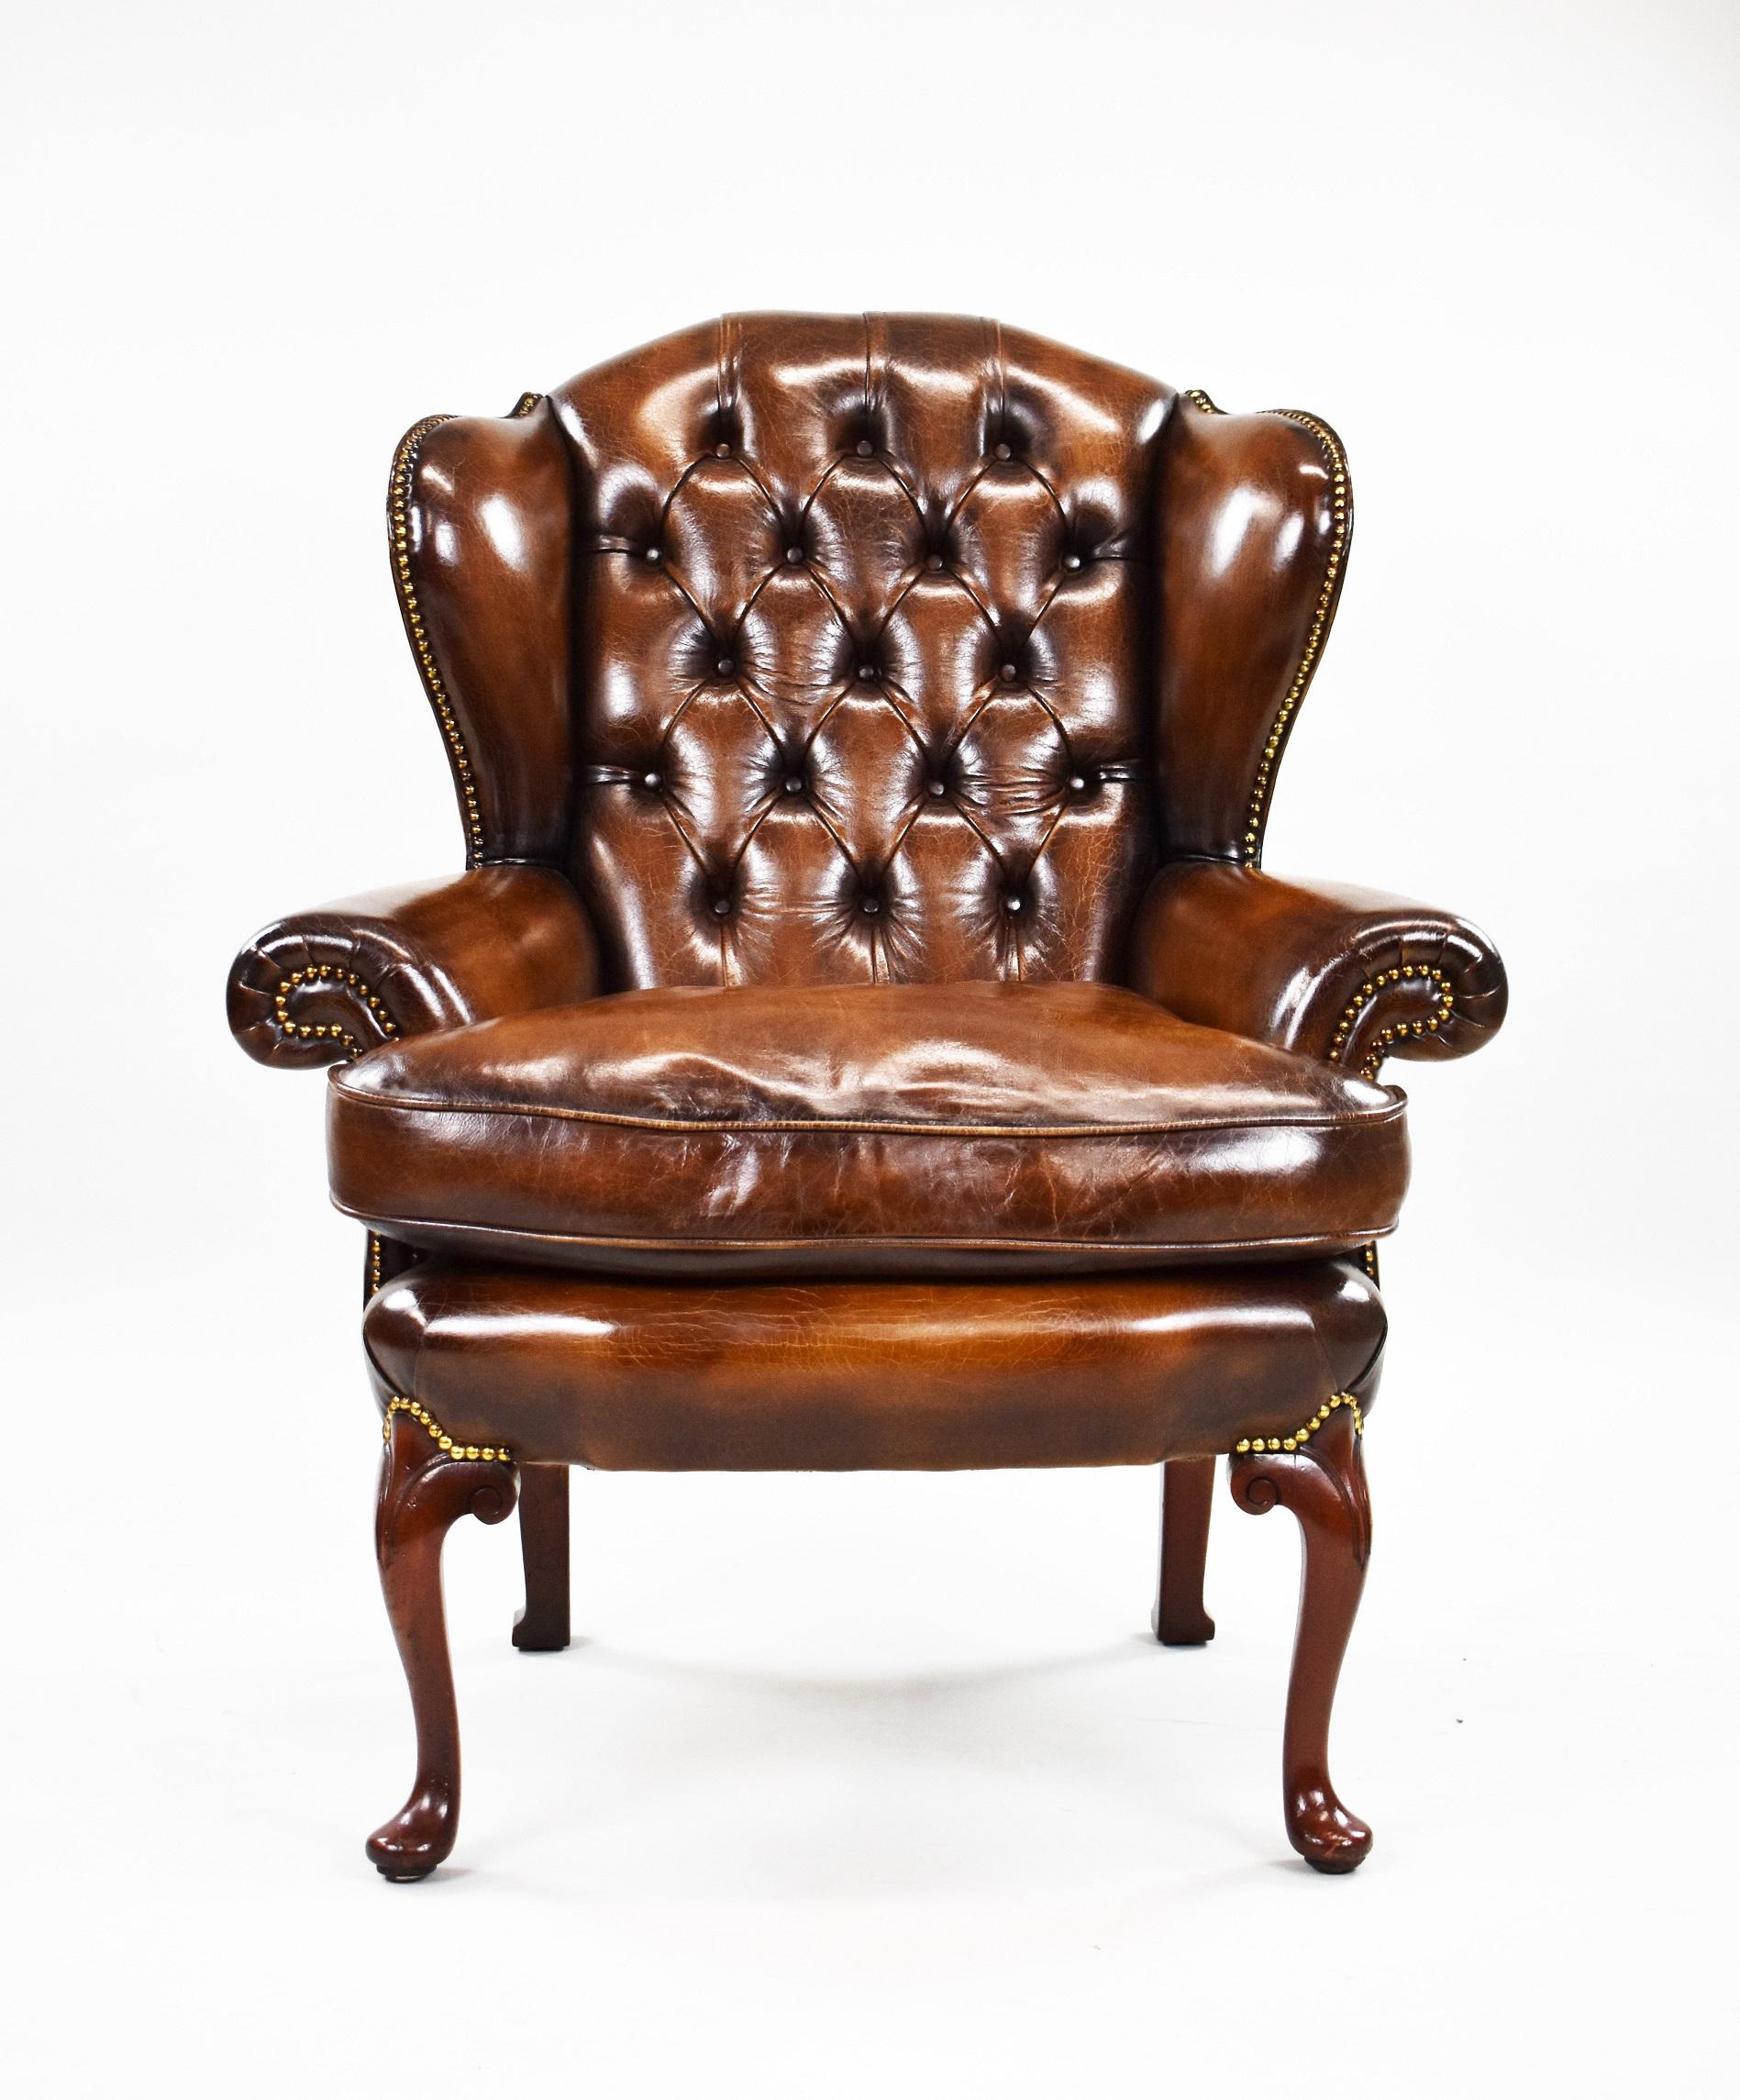 Mahagoni-Sessel im George-II-Stil, gepolstert mit handgefärbtem braunem Leder, mit geknöpfter Rückenlehne und geschwungenen Armlehnen. Der Stuhl ist oben, an den Seiten und an den Armlehnen dicht besetzt. Steht auf Cabriole-Beinen.